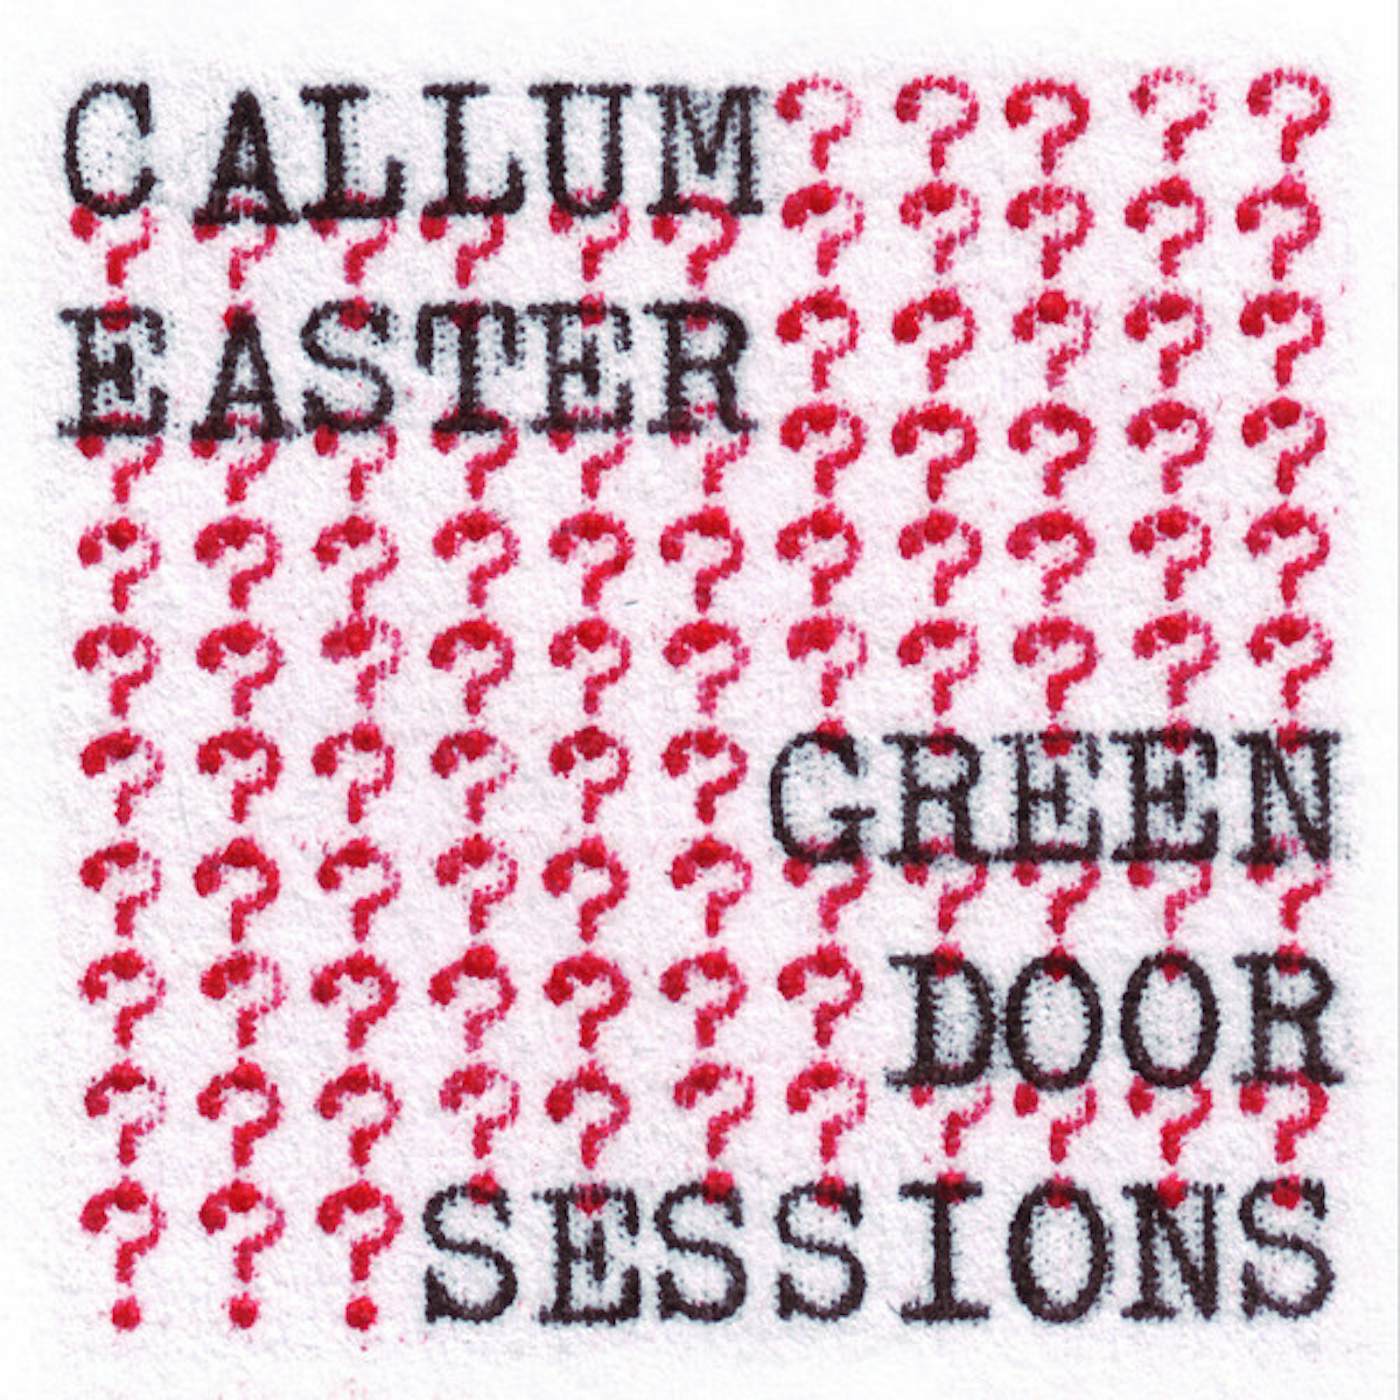 Callum Easter Green Door Sessions Vinyl Record